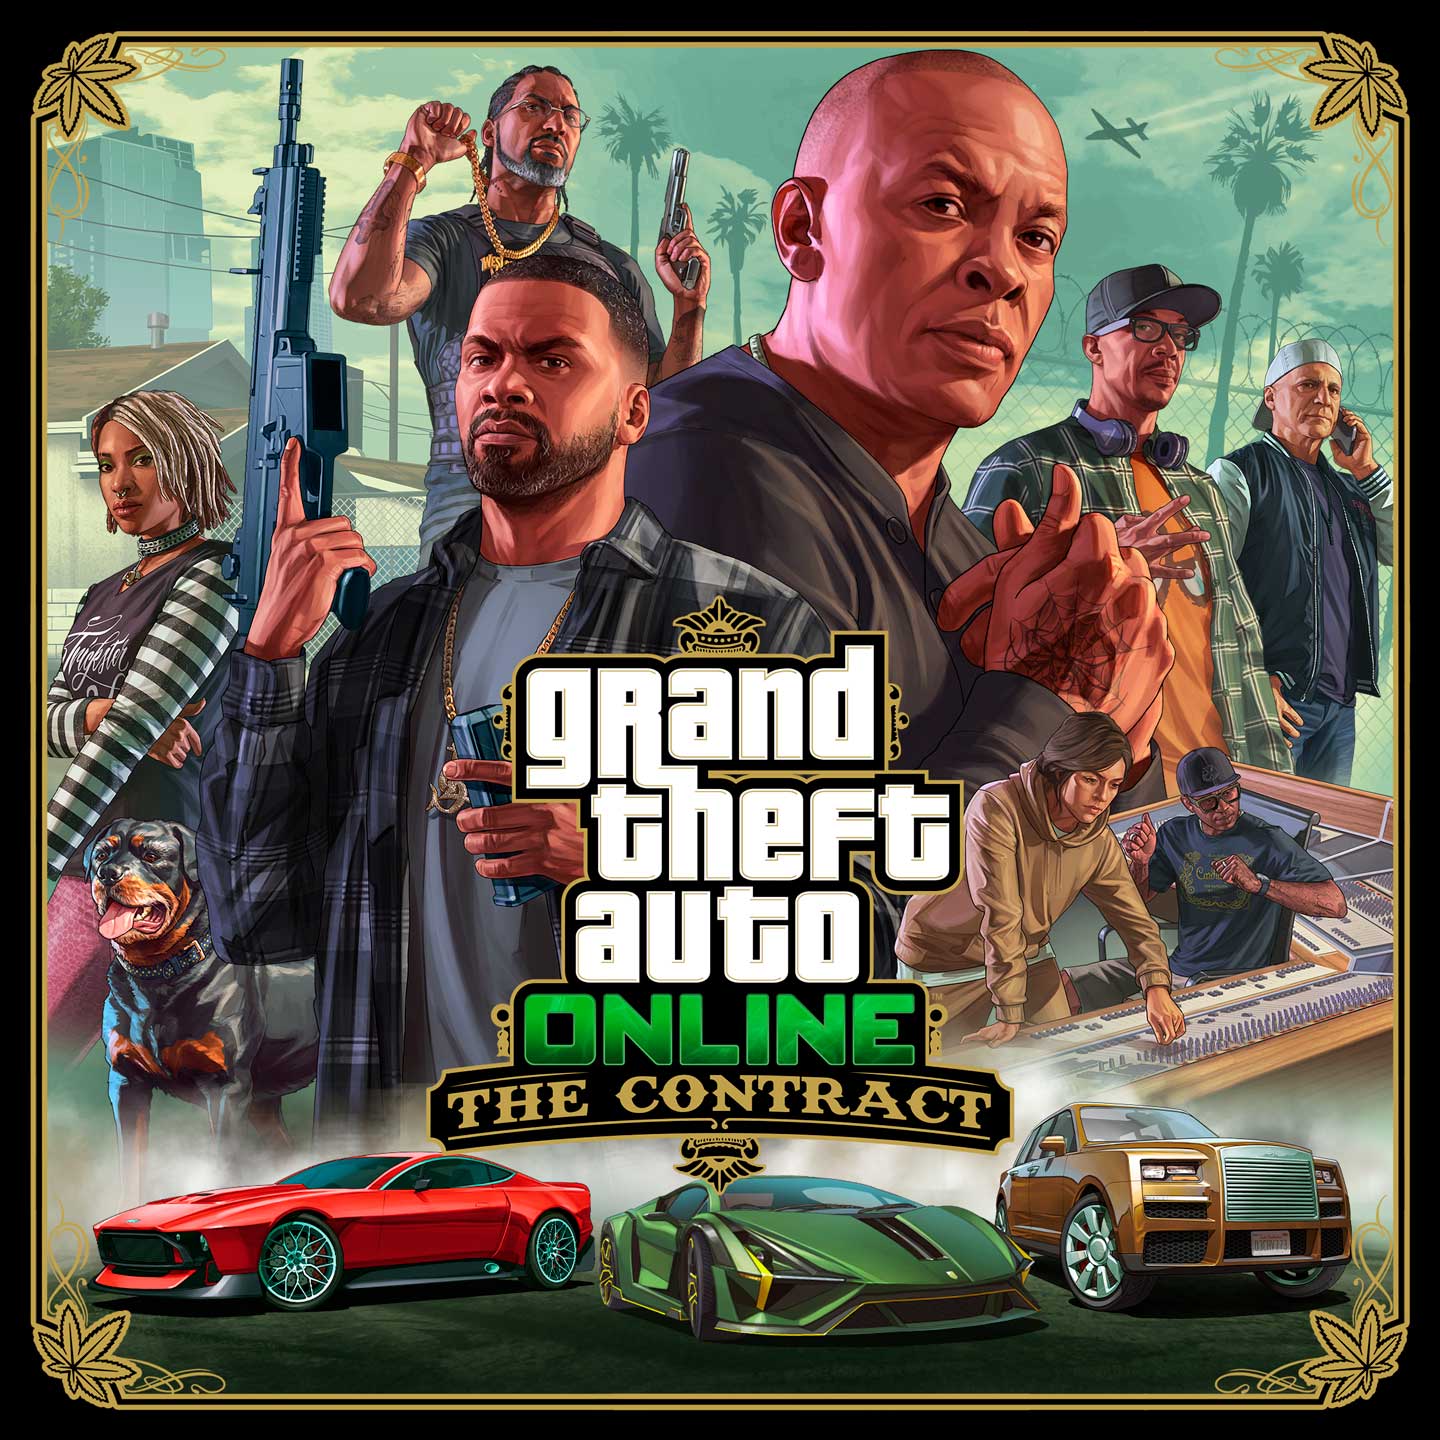 Grand Theft Auto Online